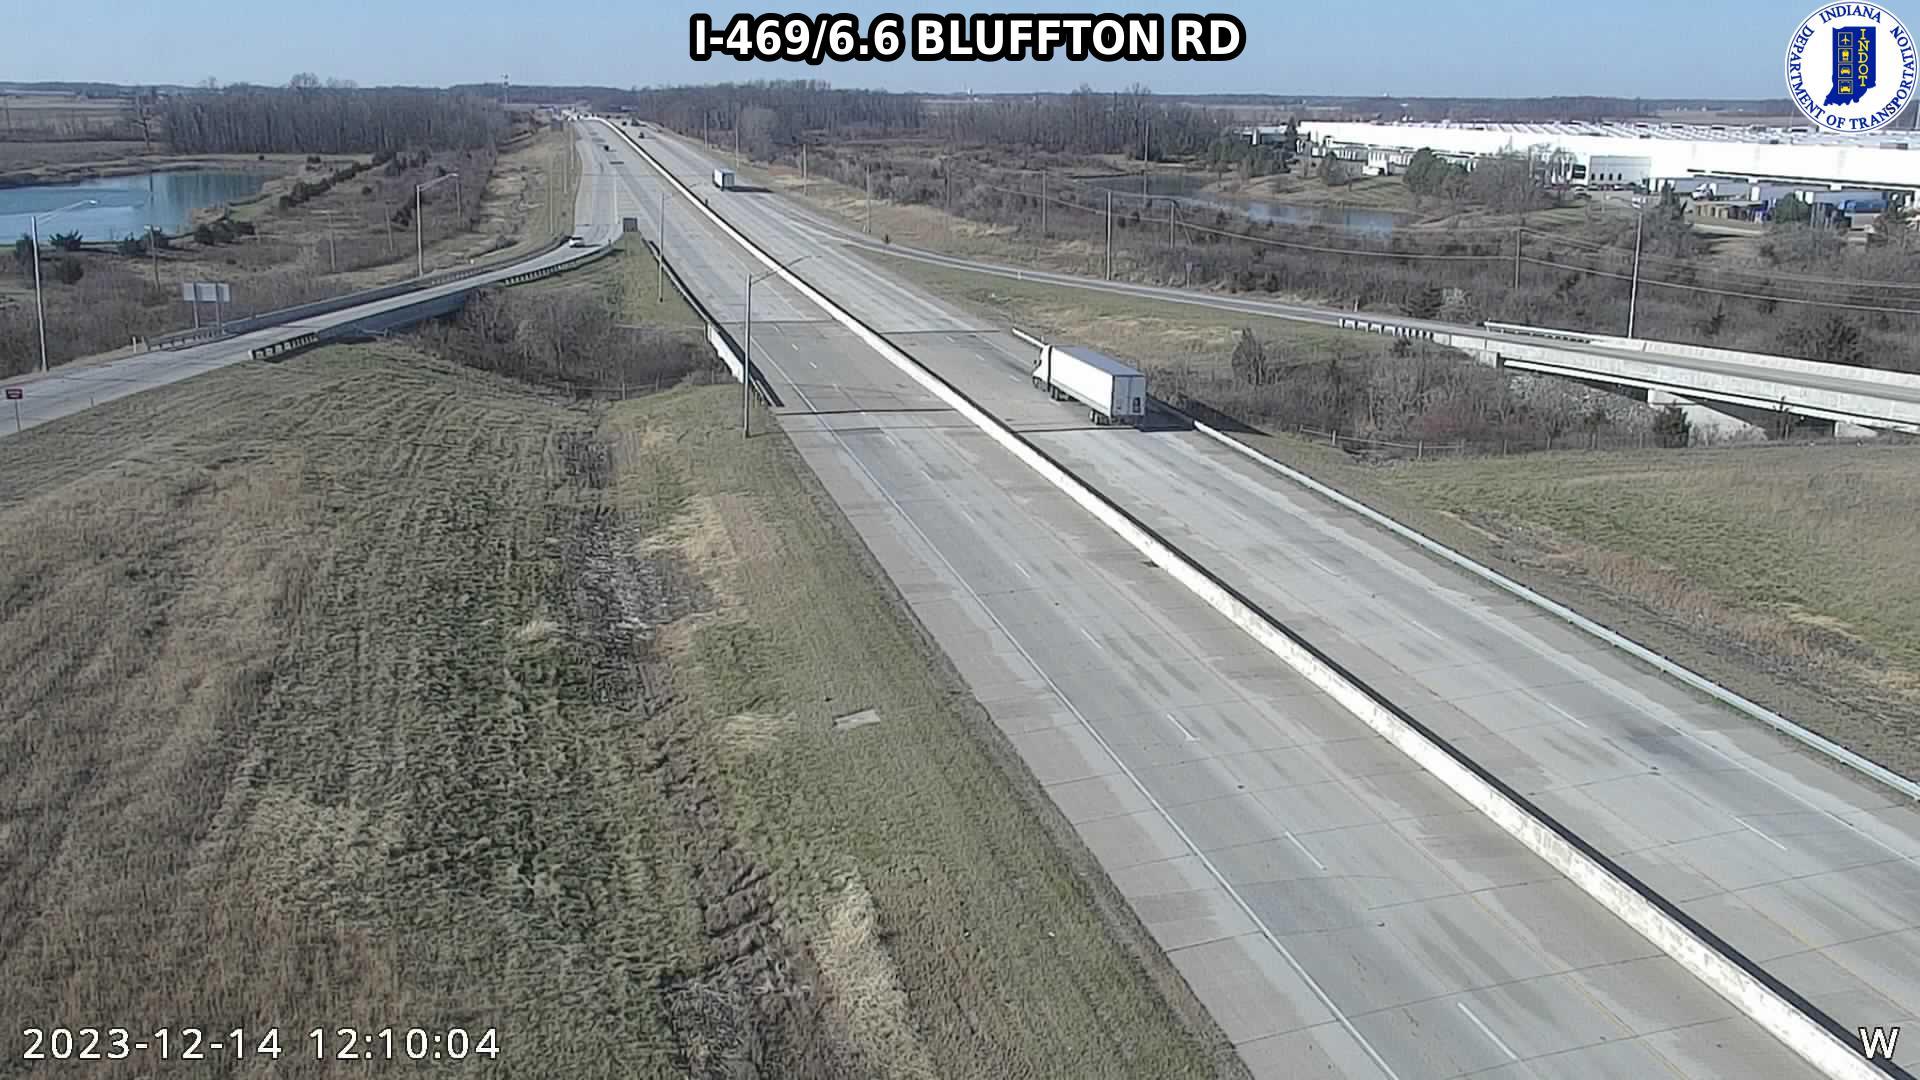 Traffic Cam Blair: I-469: I-469/6.6 BLUFFTON RD